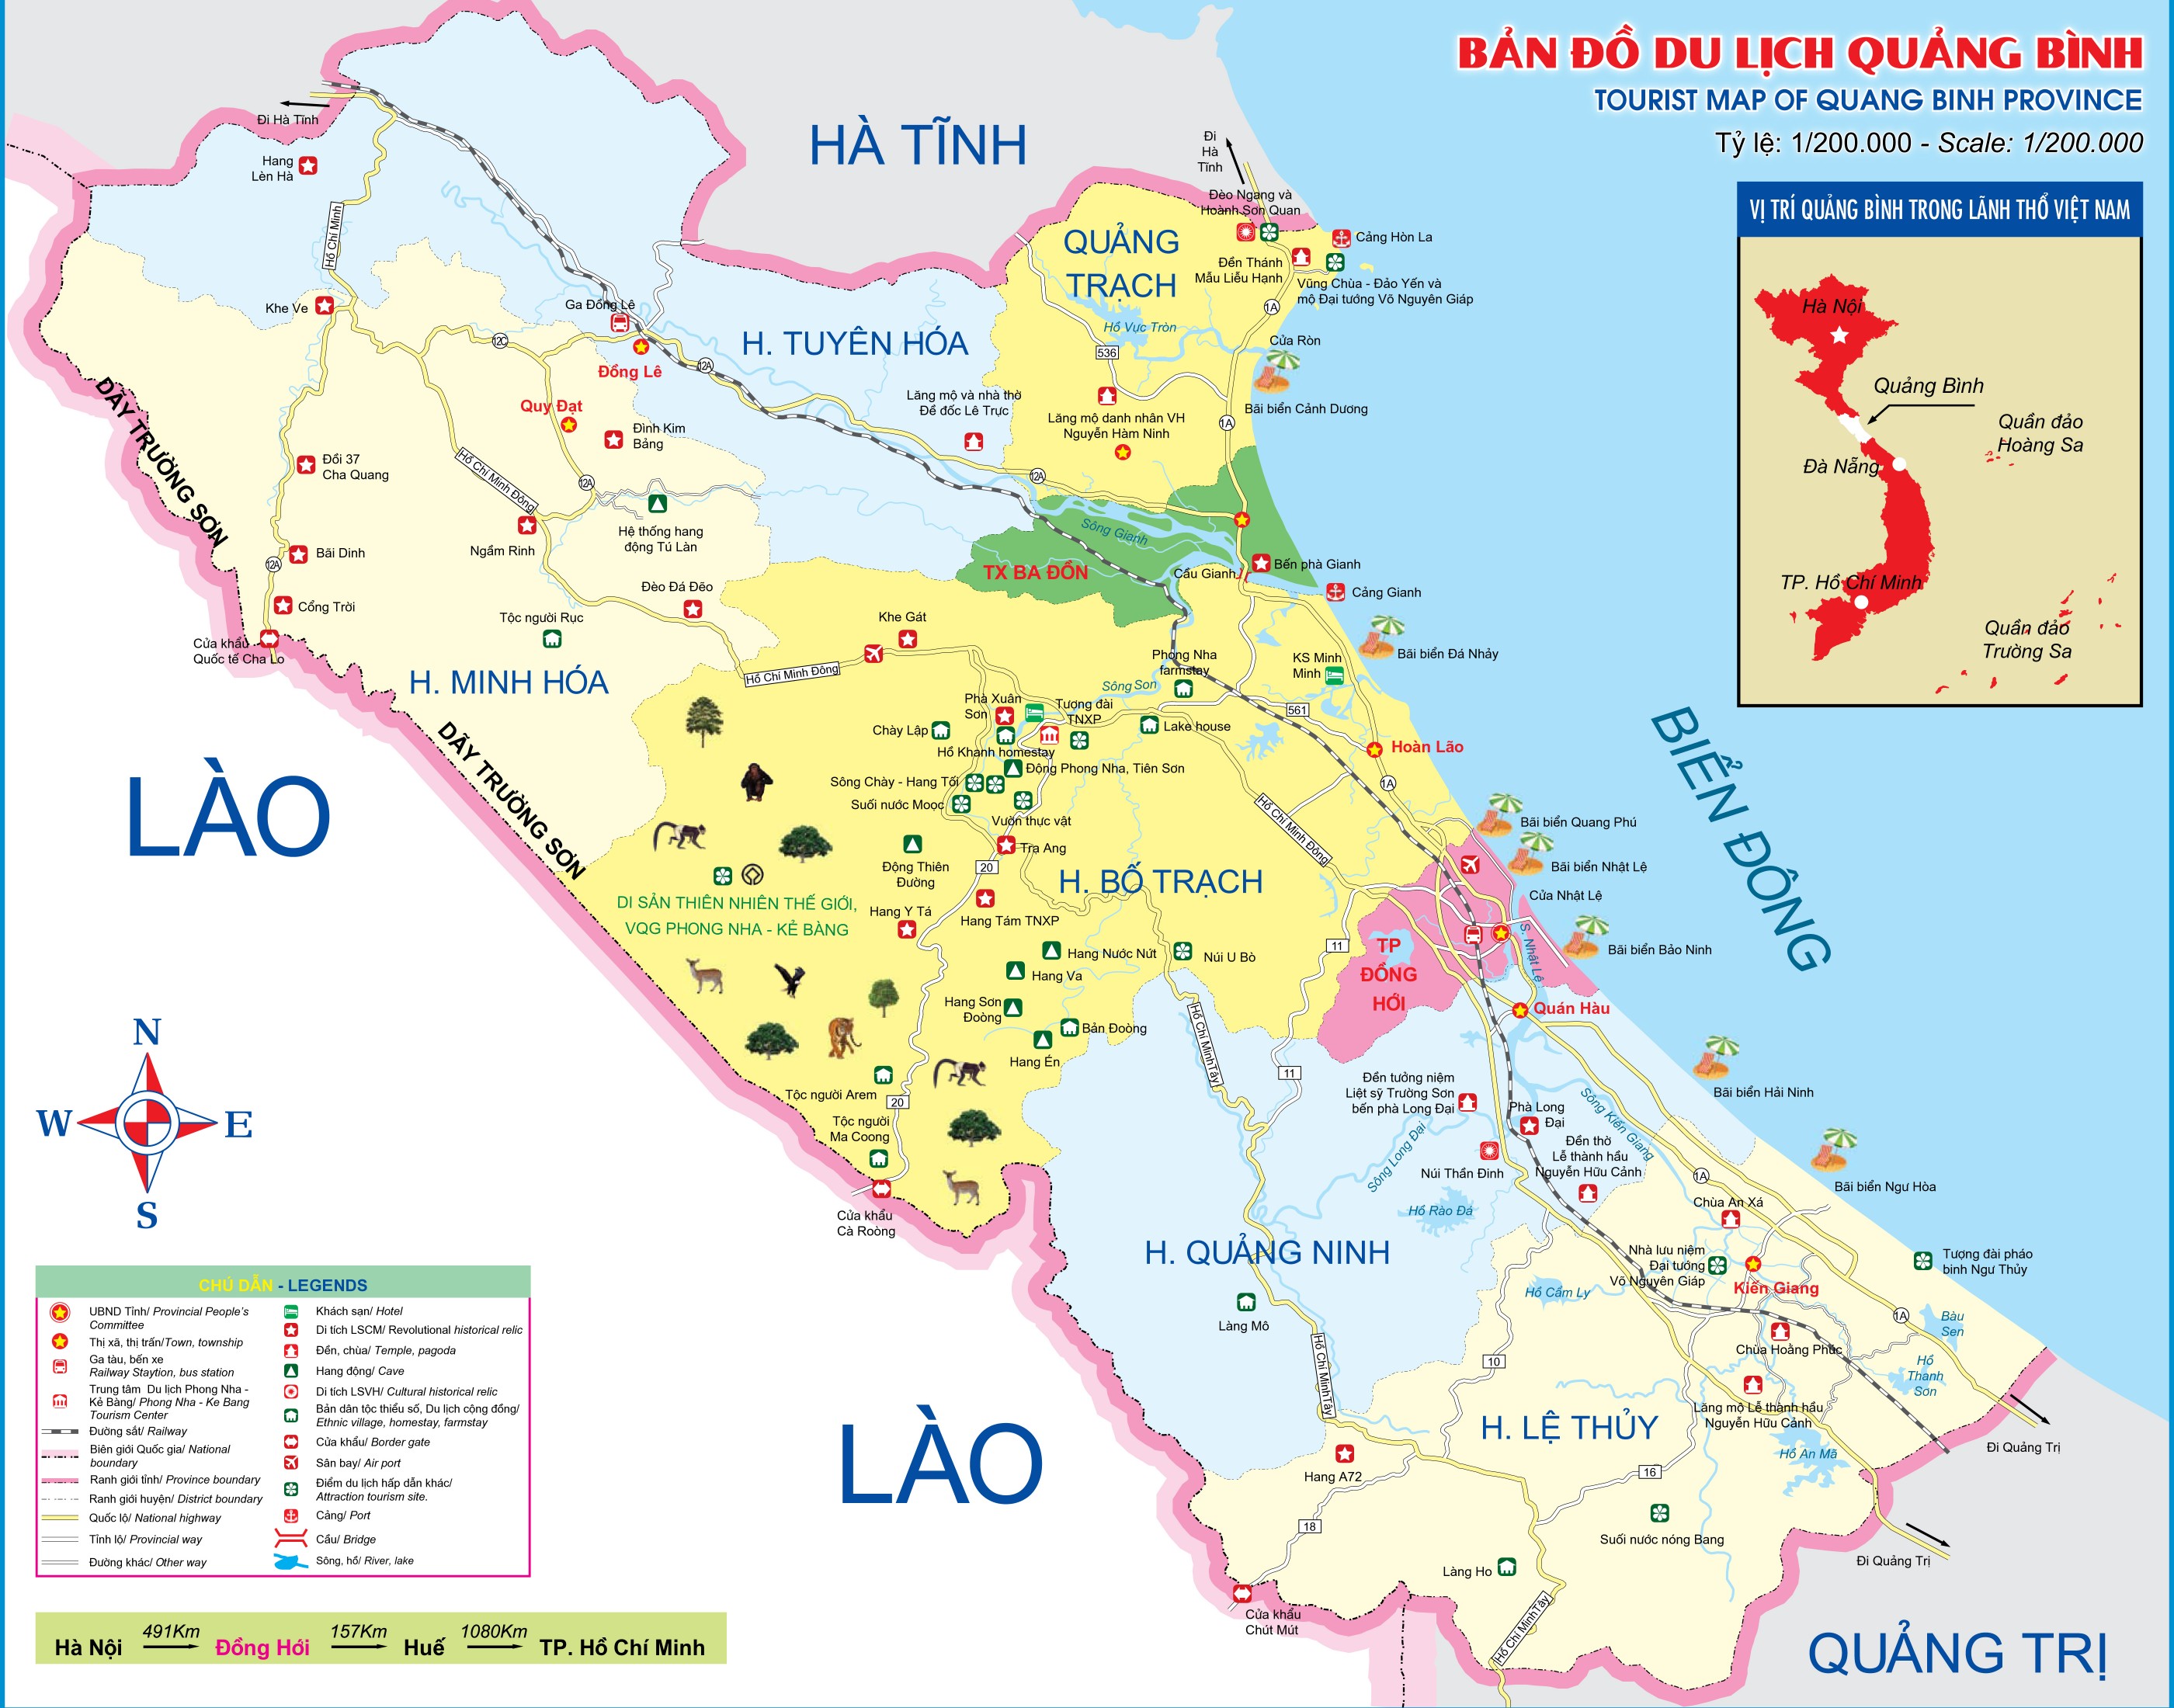 Bản đồ hành chính tỉnh Quảng Bình năm 2024 đã được cập nhật và nó sẽ giúp bạn hiểu rõ hơn về địa hình, văn hóa và địa danh của vùng đất này. Điều đó sẽ mang lại cho bạn nhiều trải nghiệm thú vị và kiến thức mới lạ trong hành trình du lịch của bạn.